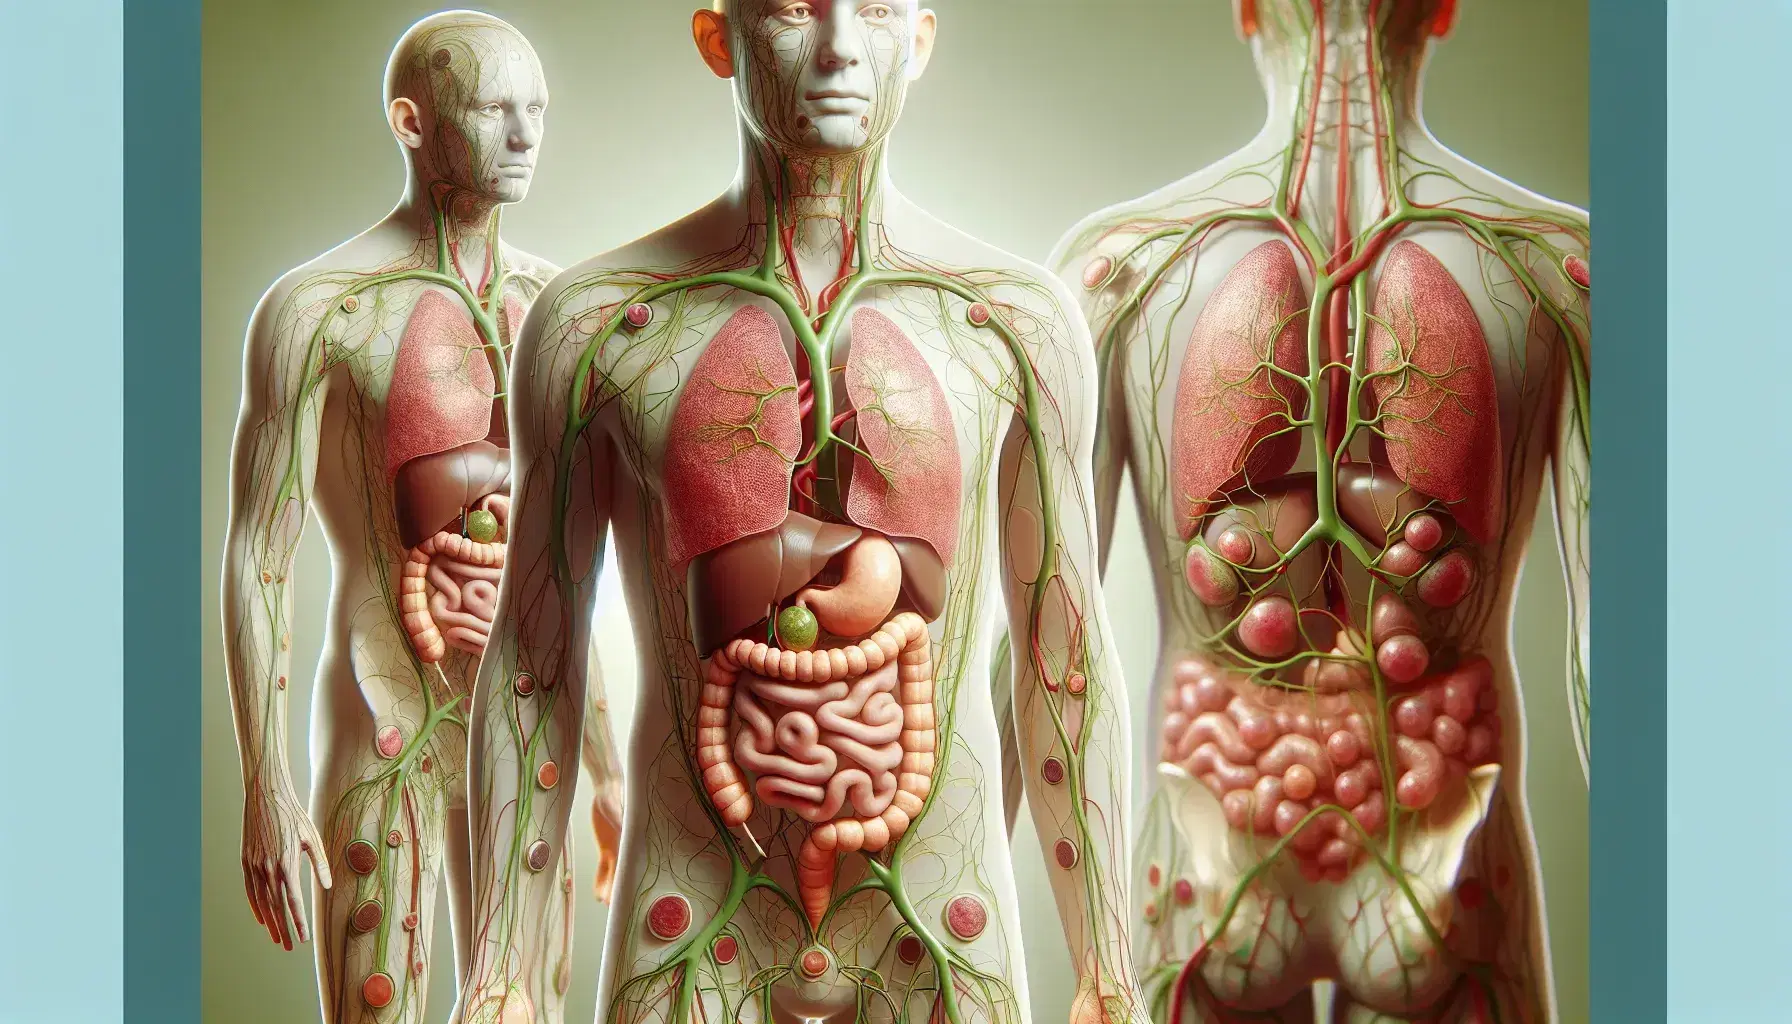 Representación anatómica del sistema linfático humano con vasos linfáticos en verde, nódulos en áreas clave y bazo en verde oscuro, sobre fondo neutro.